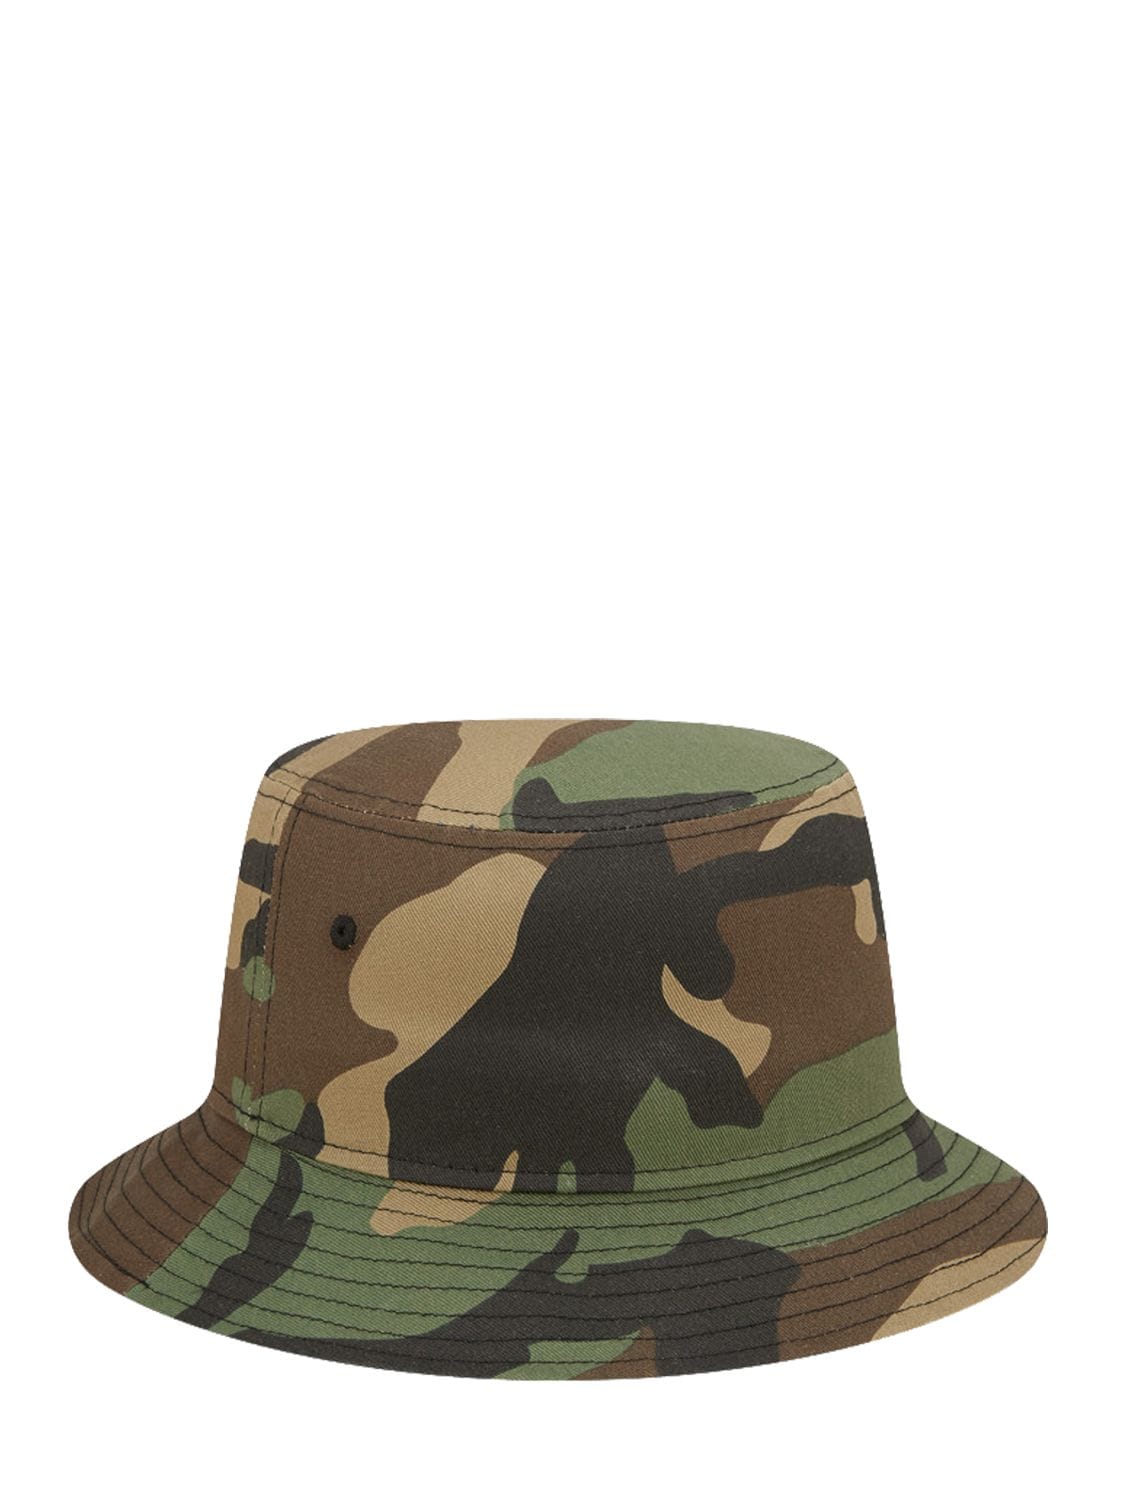 Bucket Camouflage Seasonal Bucket Hat | The Hoxton Trend